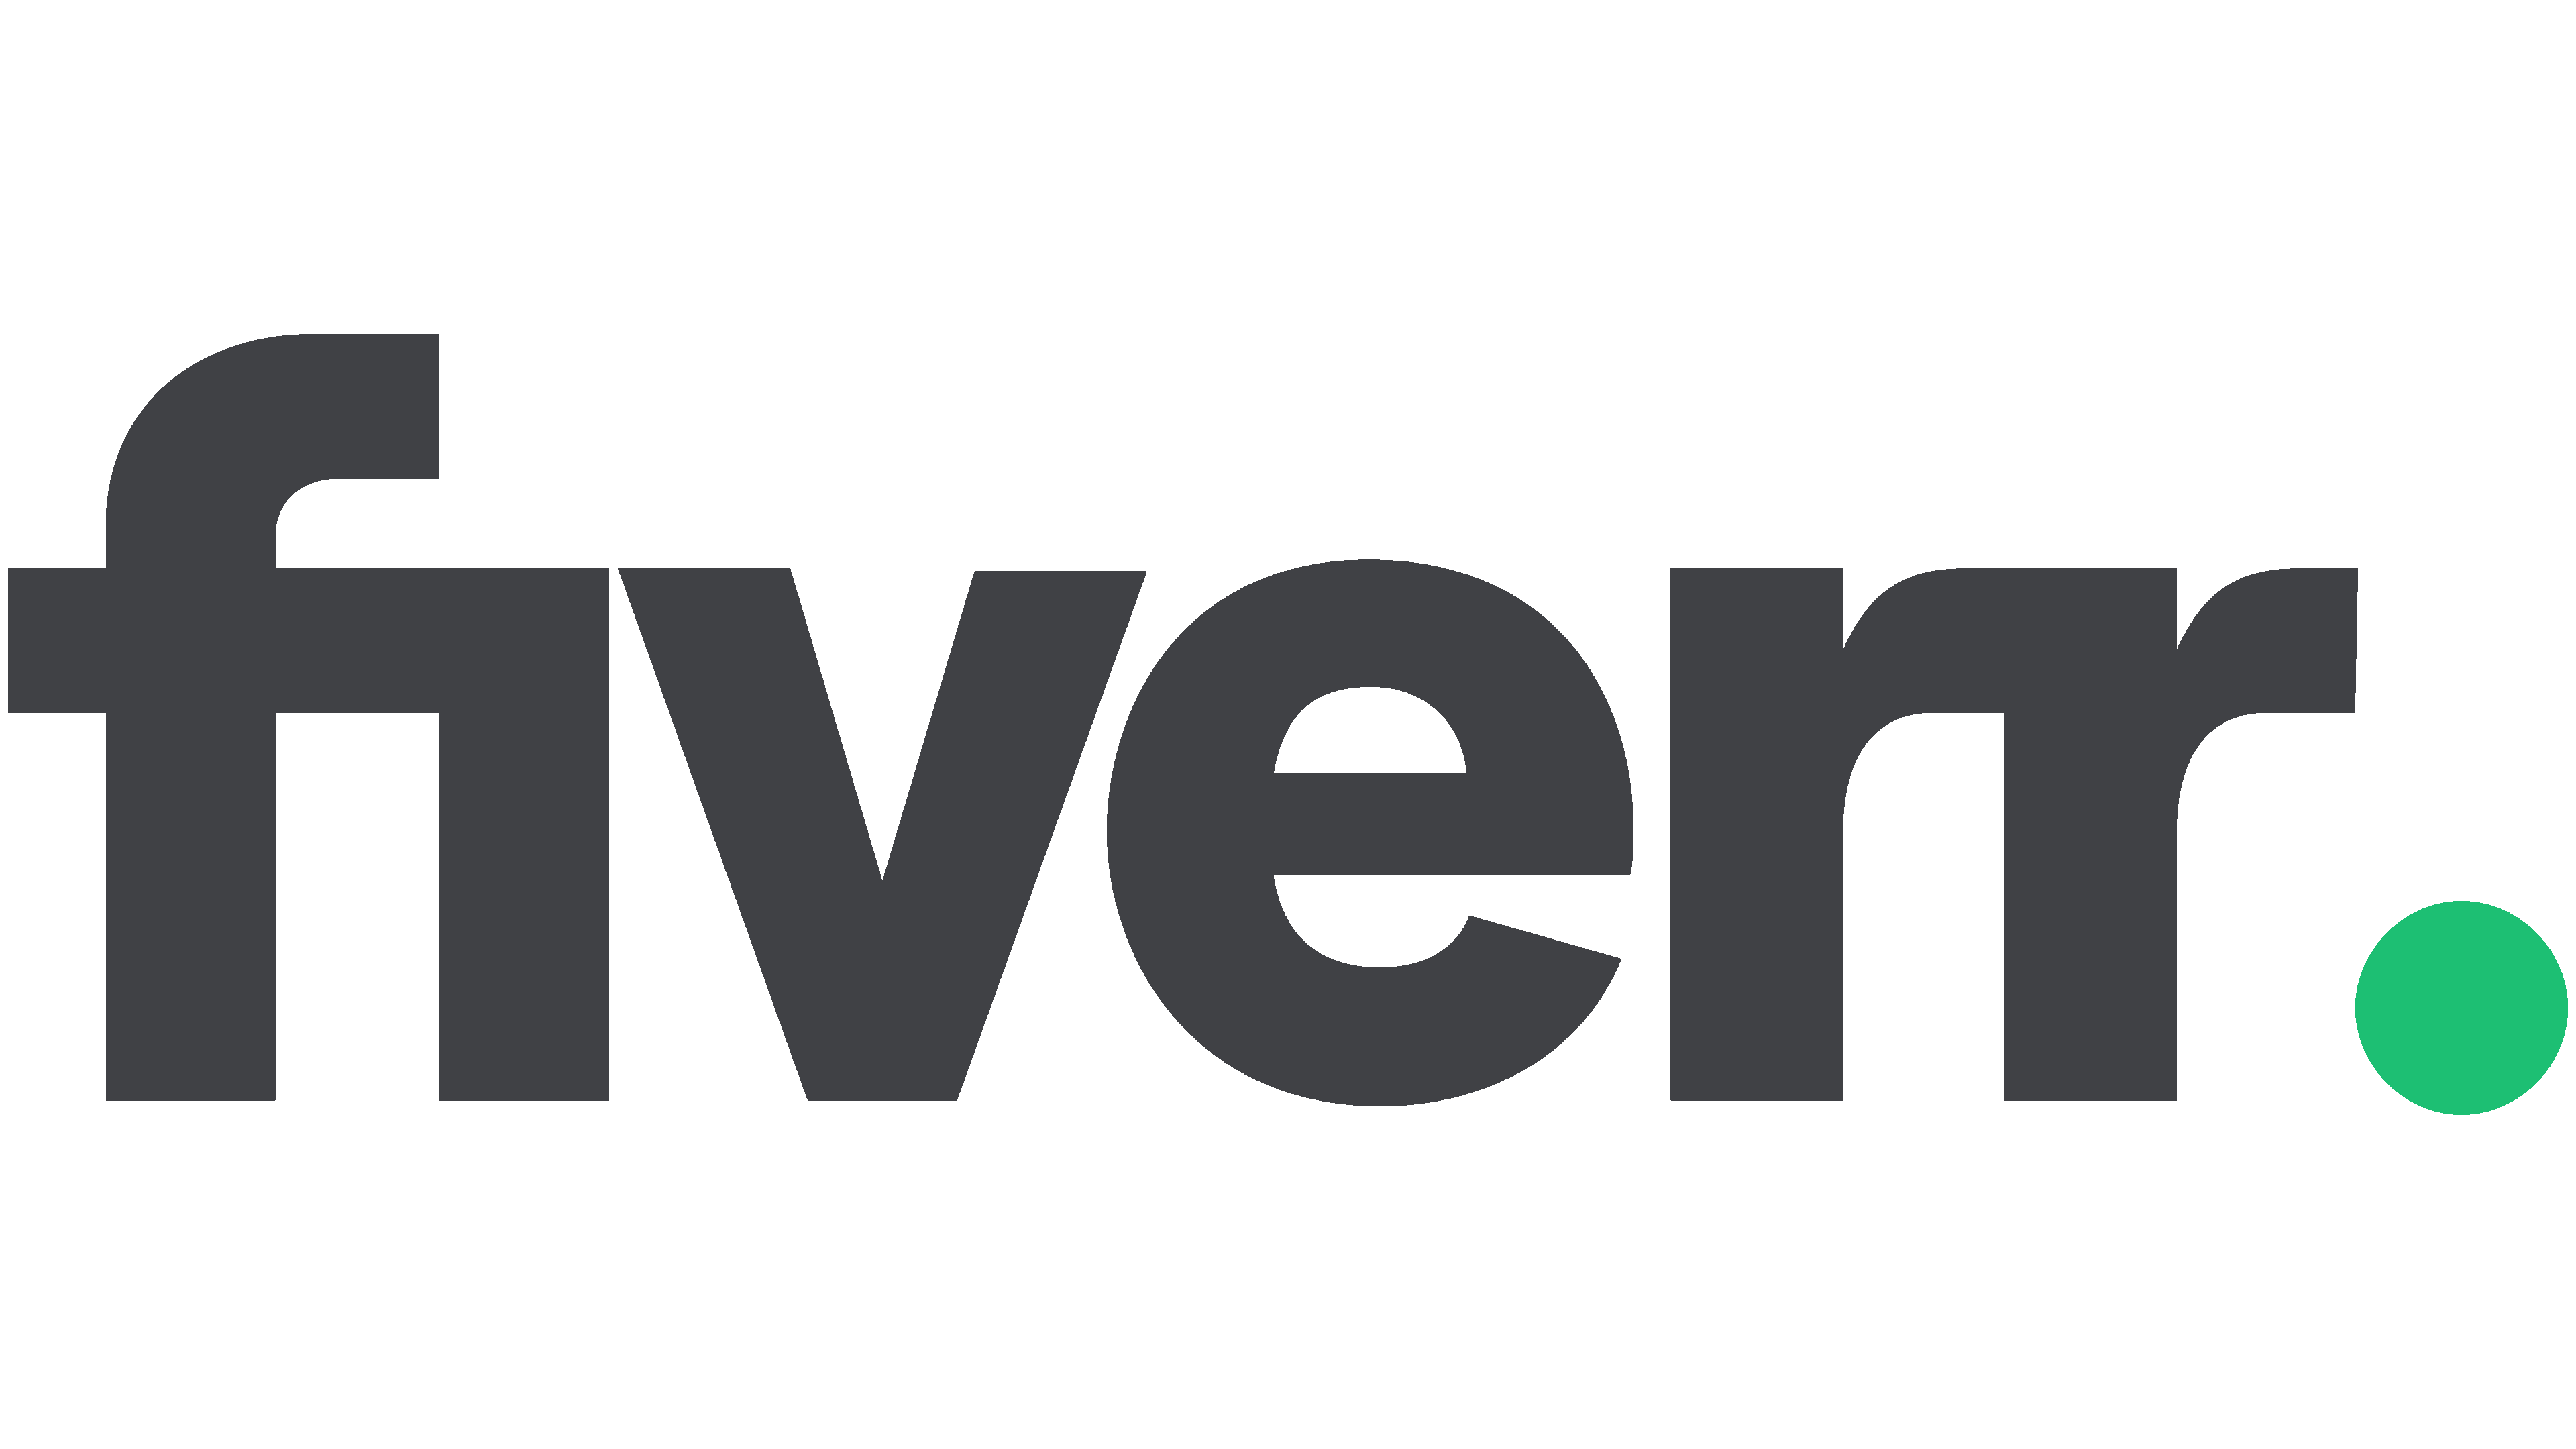 Fiverr Freelance Platform for Webdesign